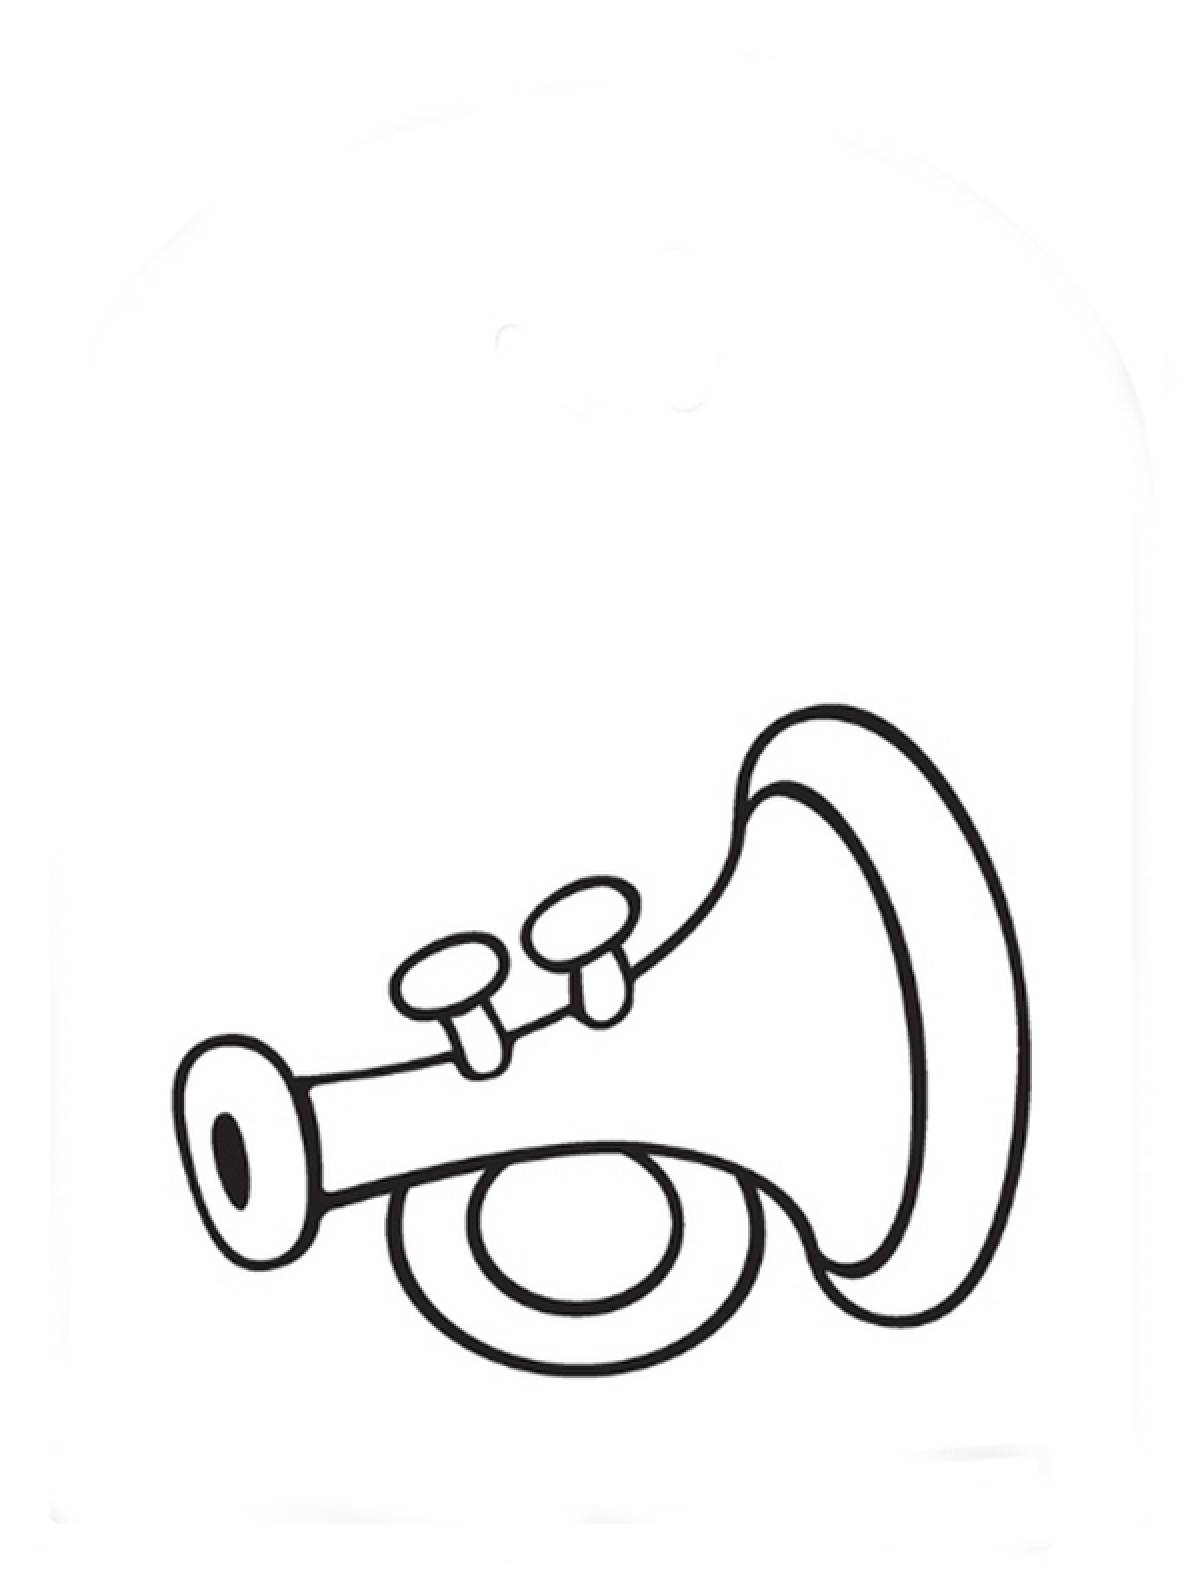 Trumpet for children